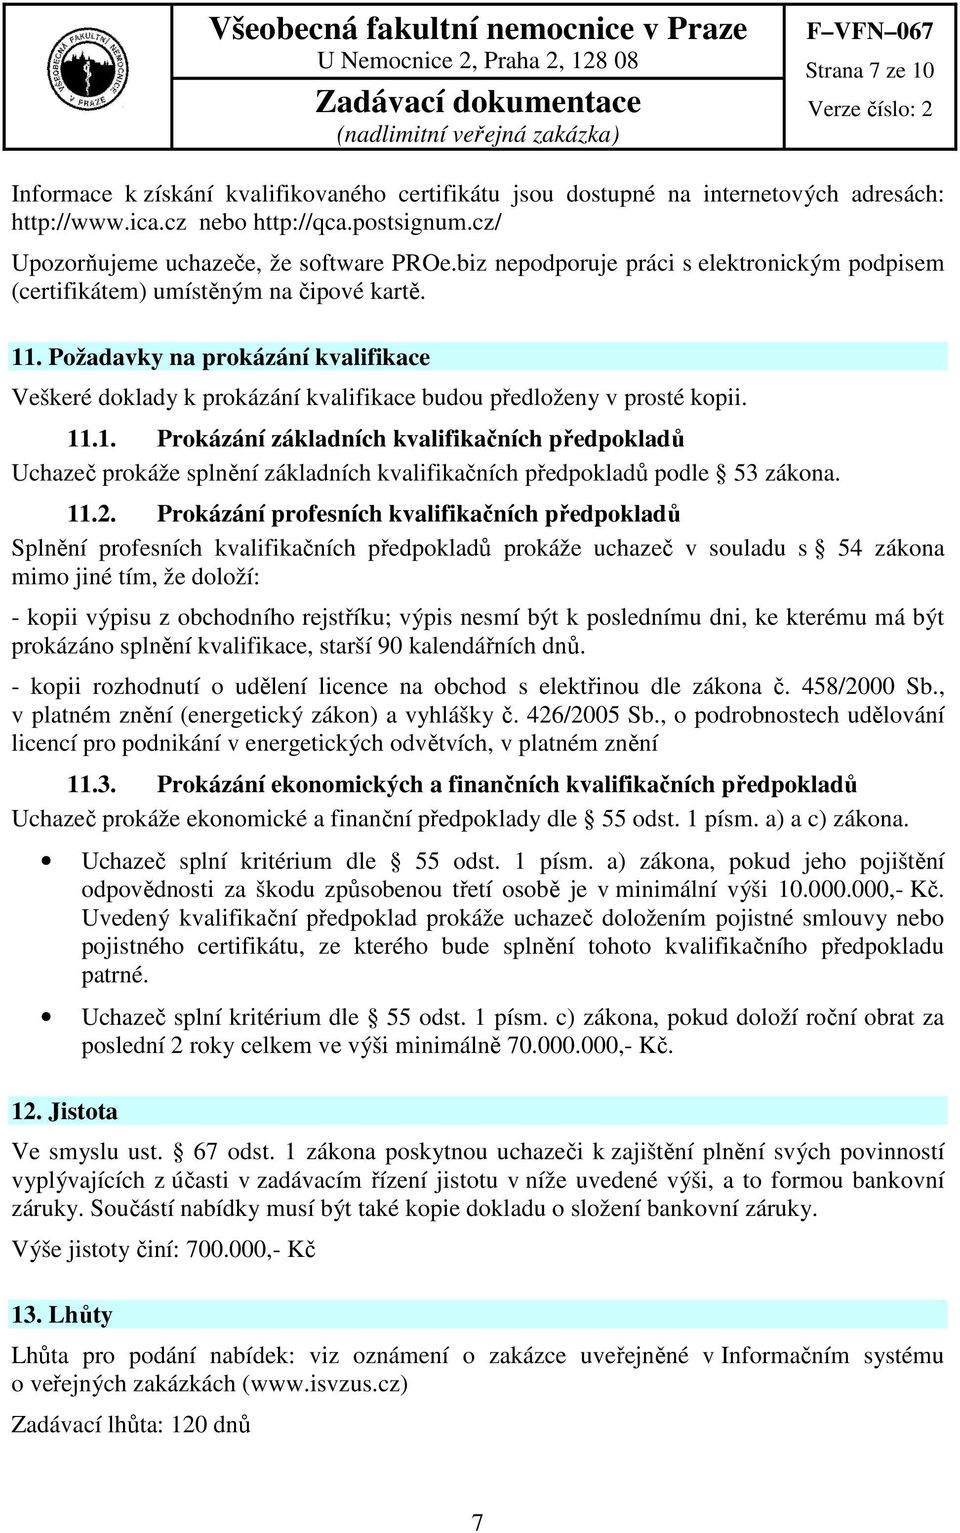 11.1. Prokázání základních kvalifikačních předpokladů Uchazeč prokáže splnění základních kvalifikačních předpokladů podle 53 zákona. 11.2.